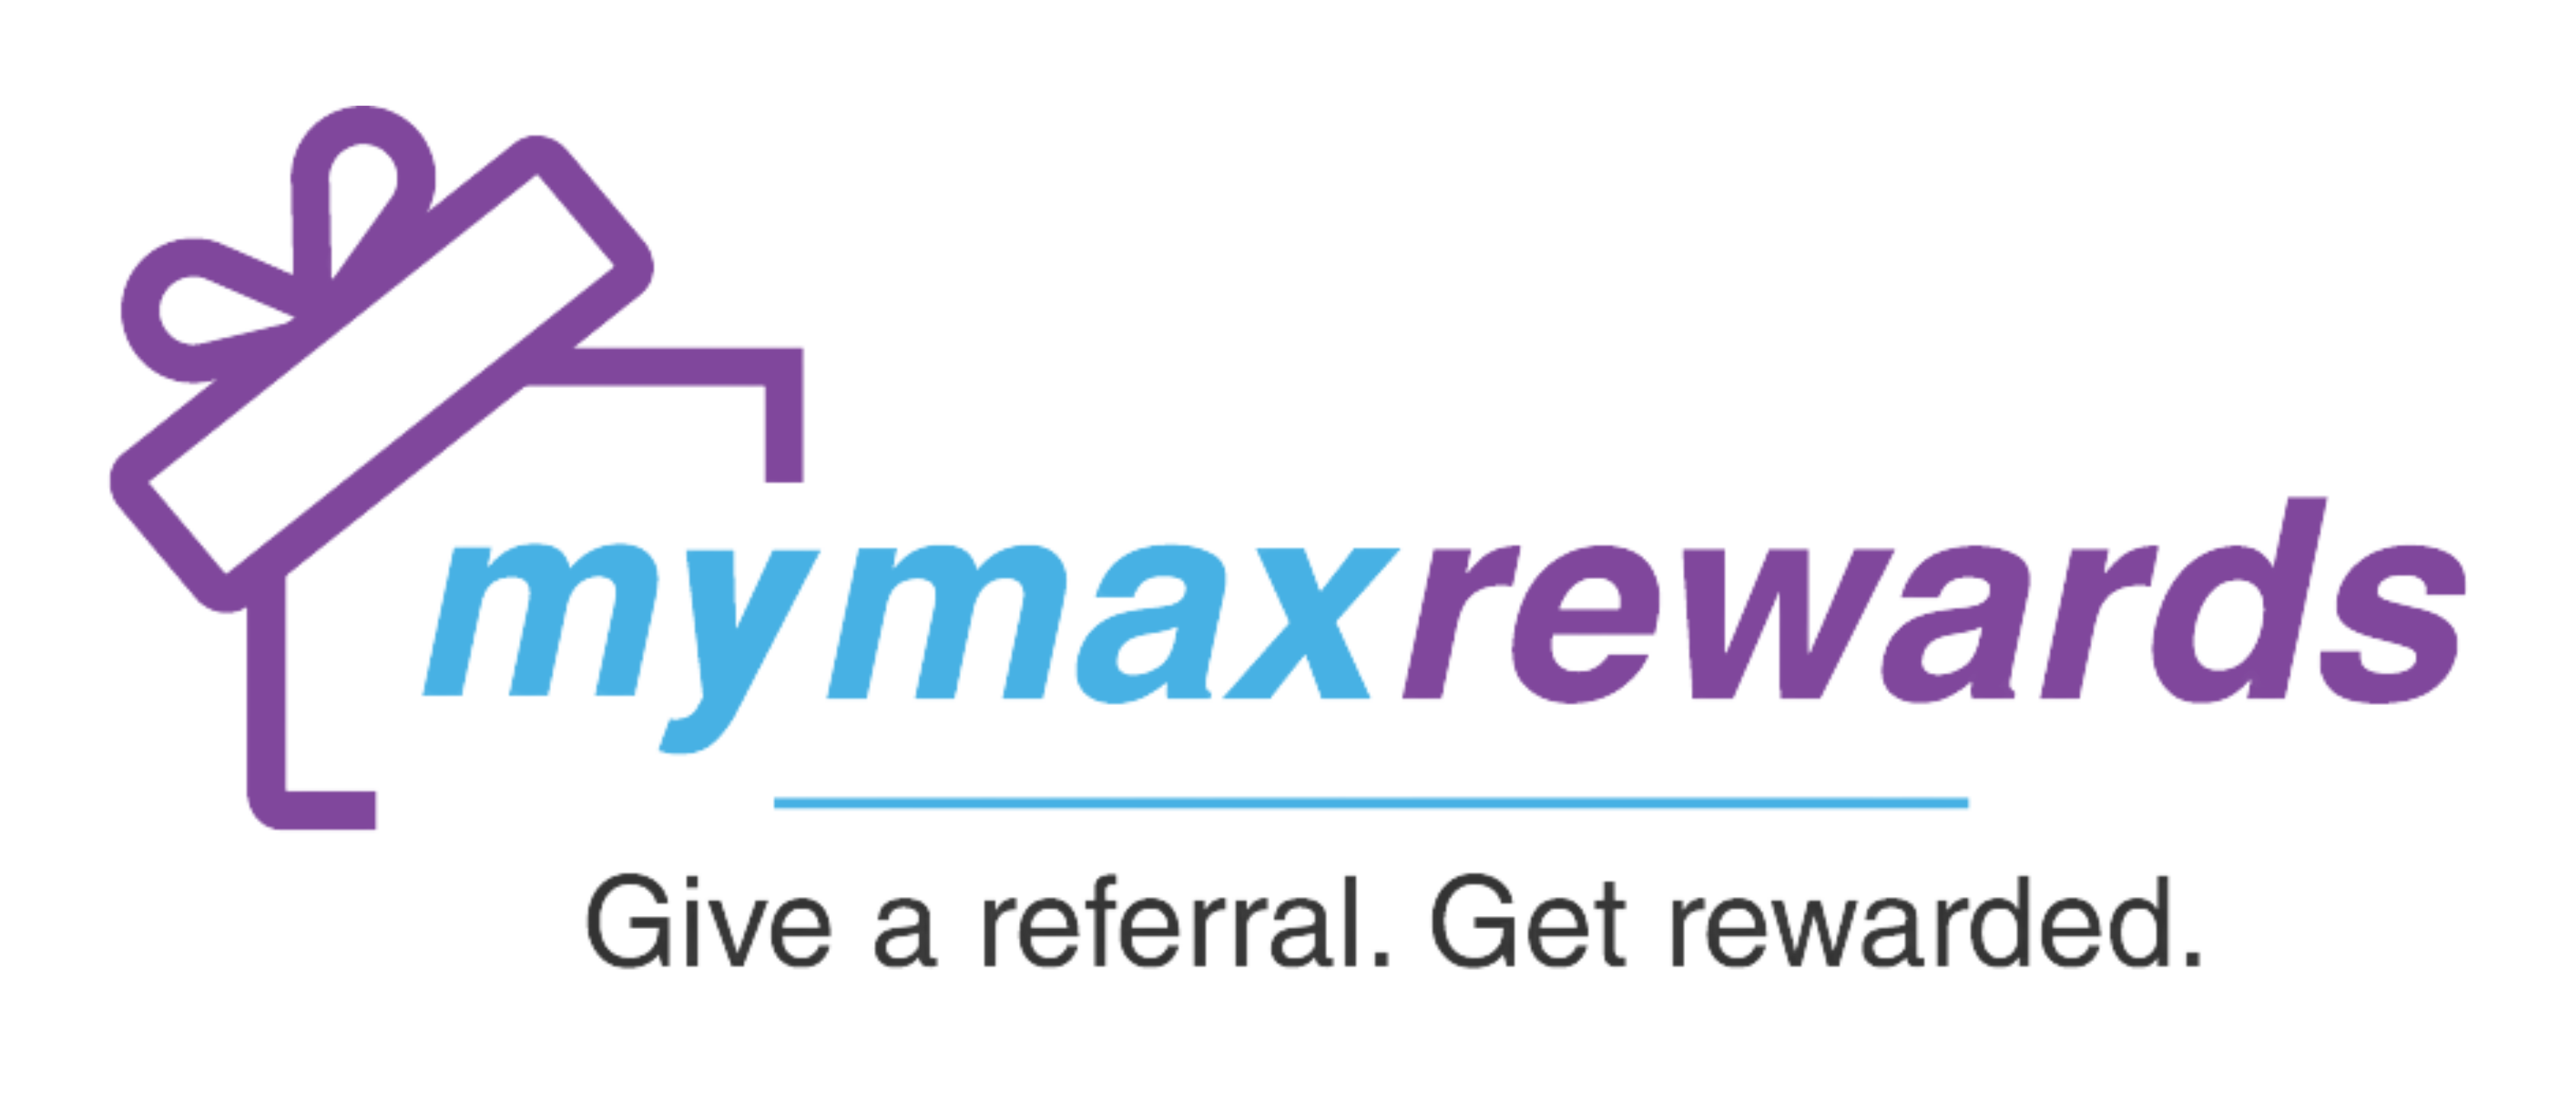 MyMaxRewards Give a Referral, Get Rewarded logo